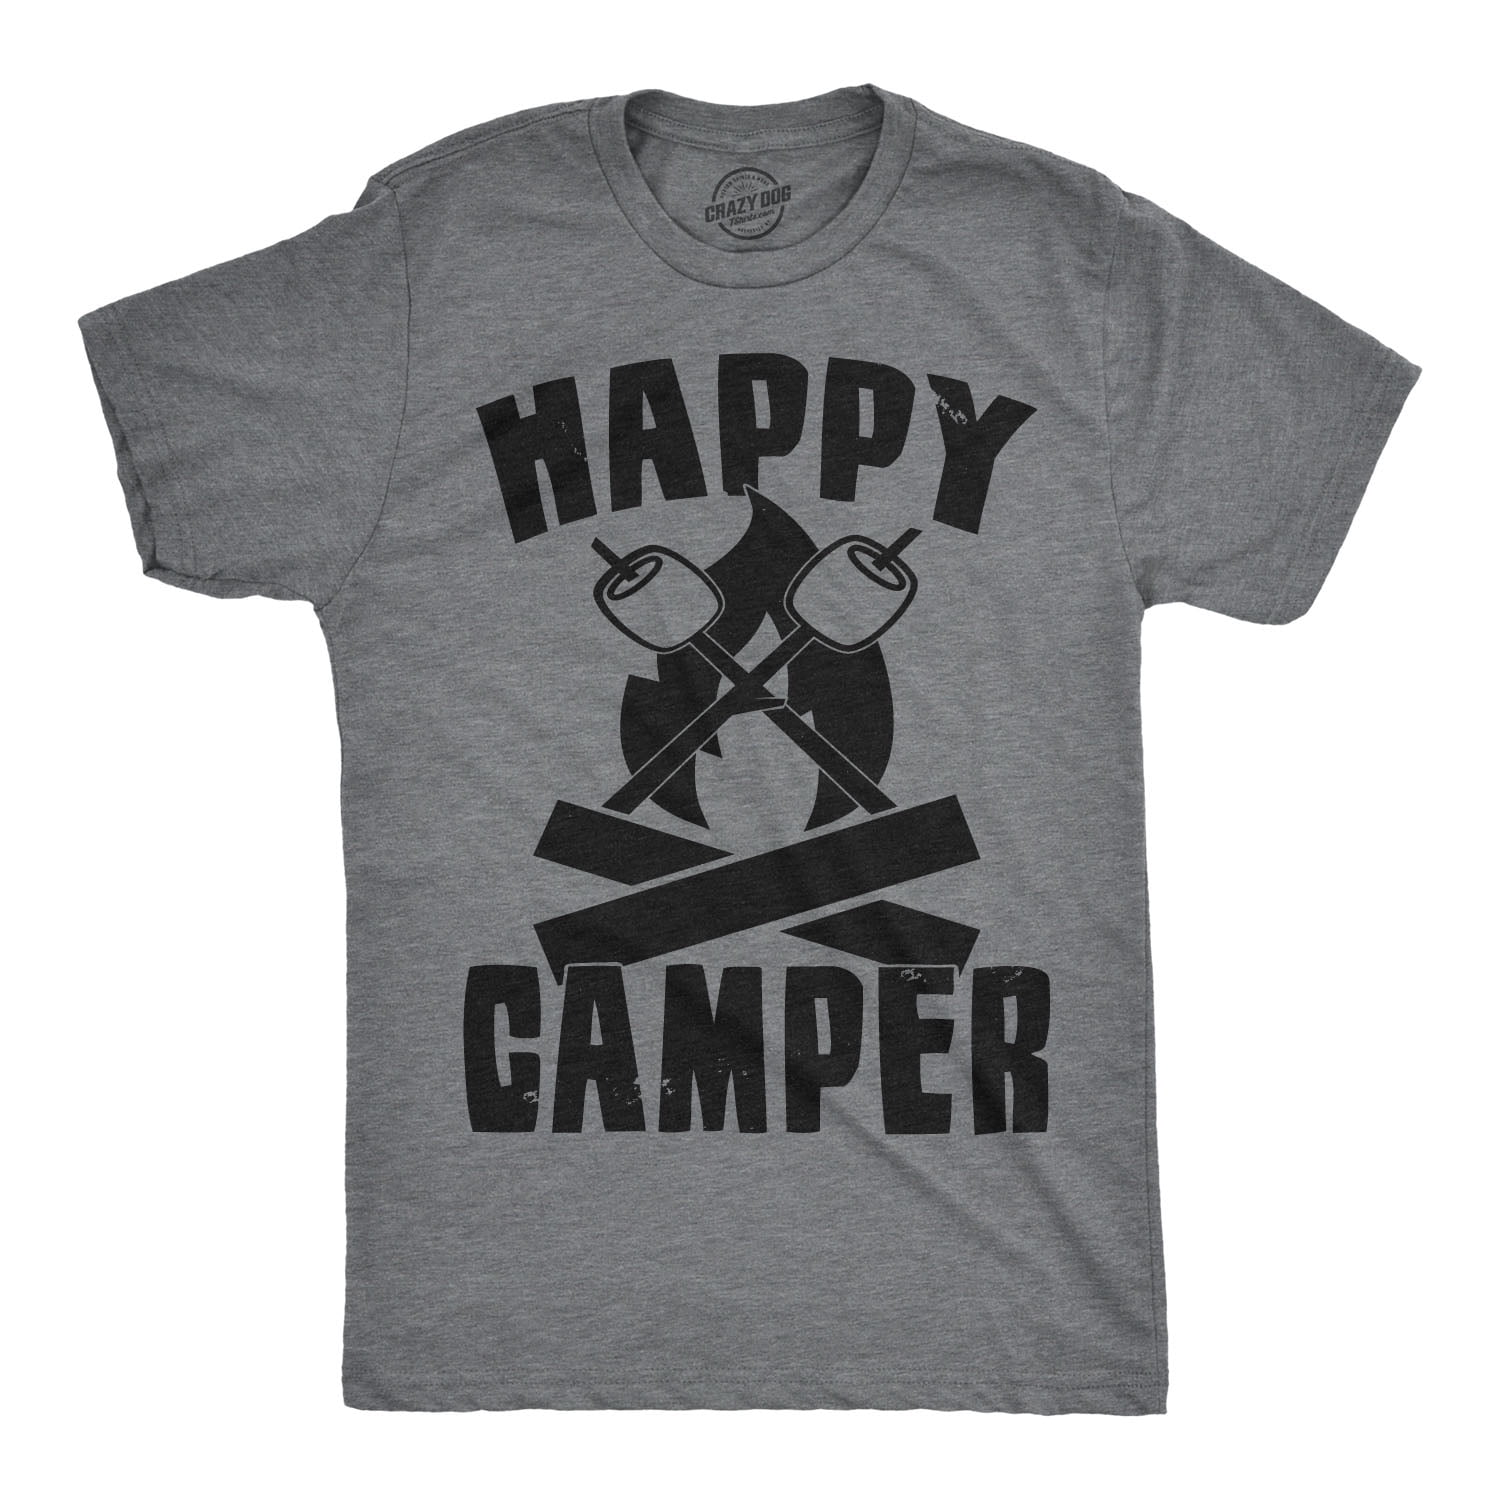 Mens Shirt Tee Shirt LookPink Camping Heatbeat Shirt 